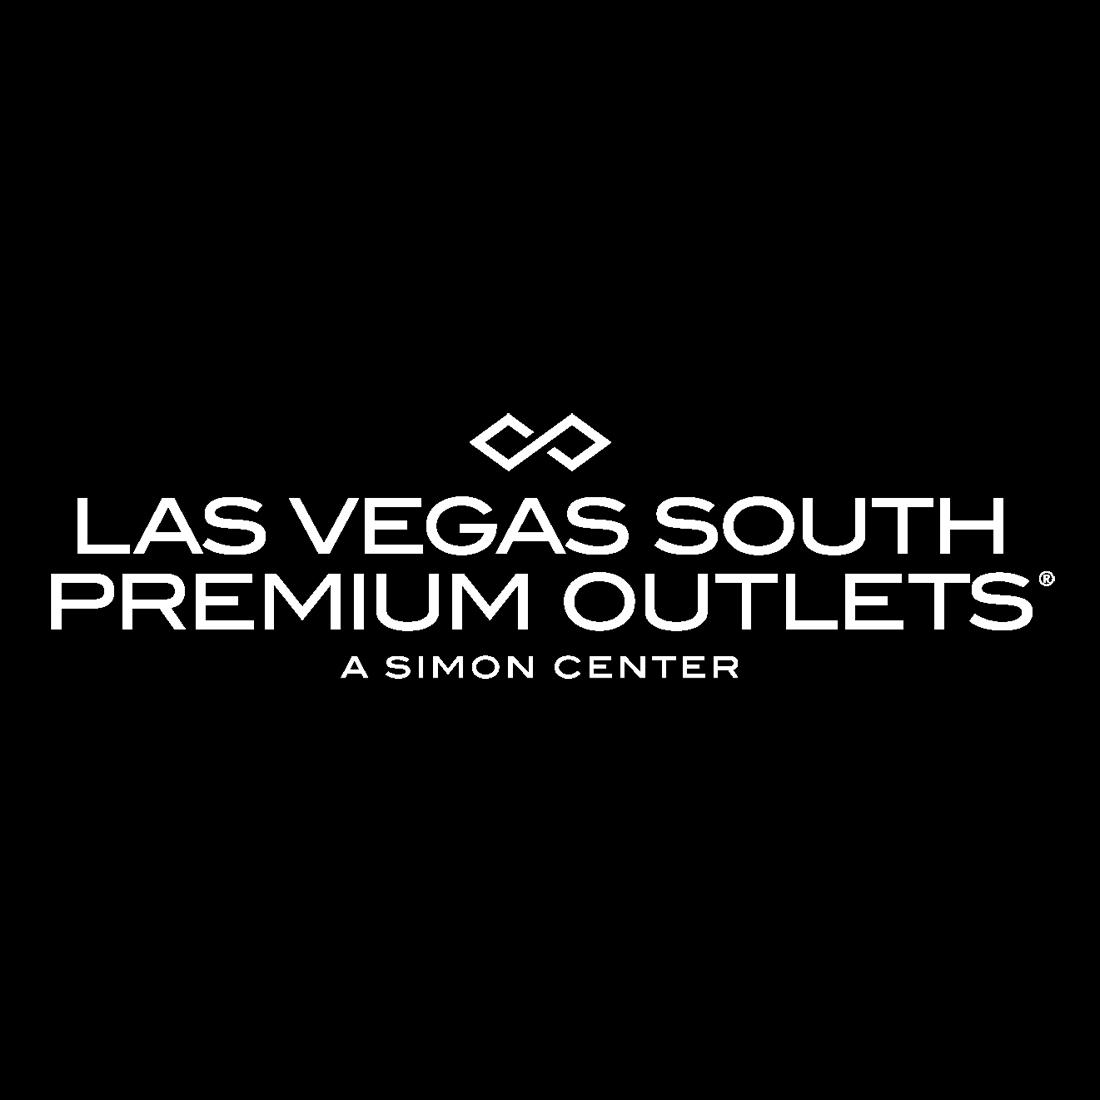 Las Vegas South Premium Outlets - Las Vegas, NV 89123 - (702)896-5599 | ShowMeLocal.com